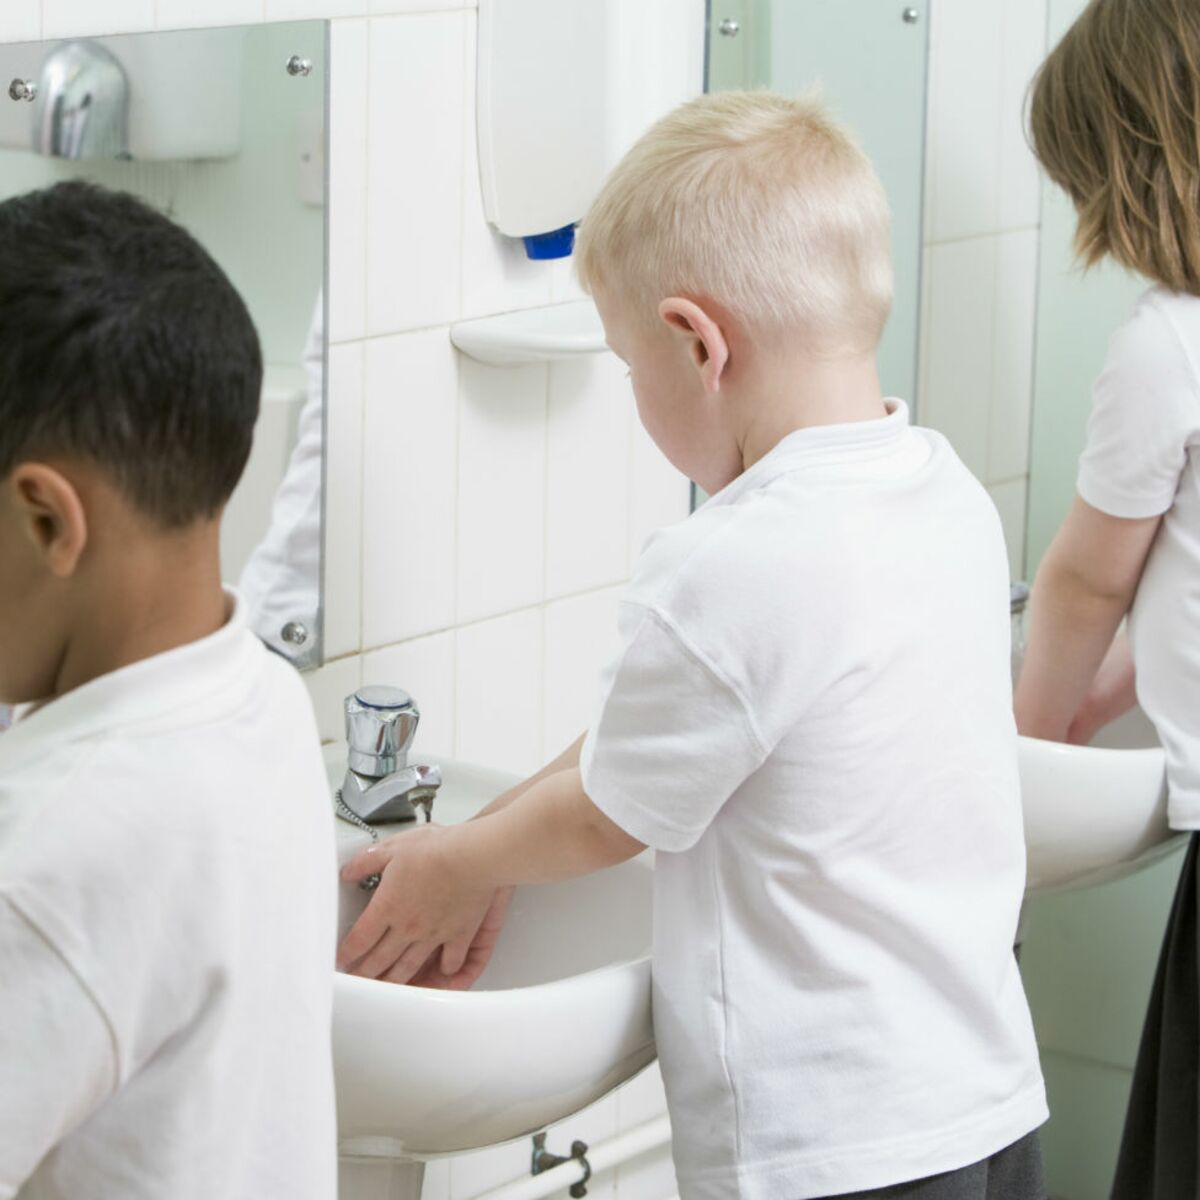 Toilettes scolaires : comment le corps des enfants et leurs besoins  sont-ils pris en compte à l'école ?